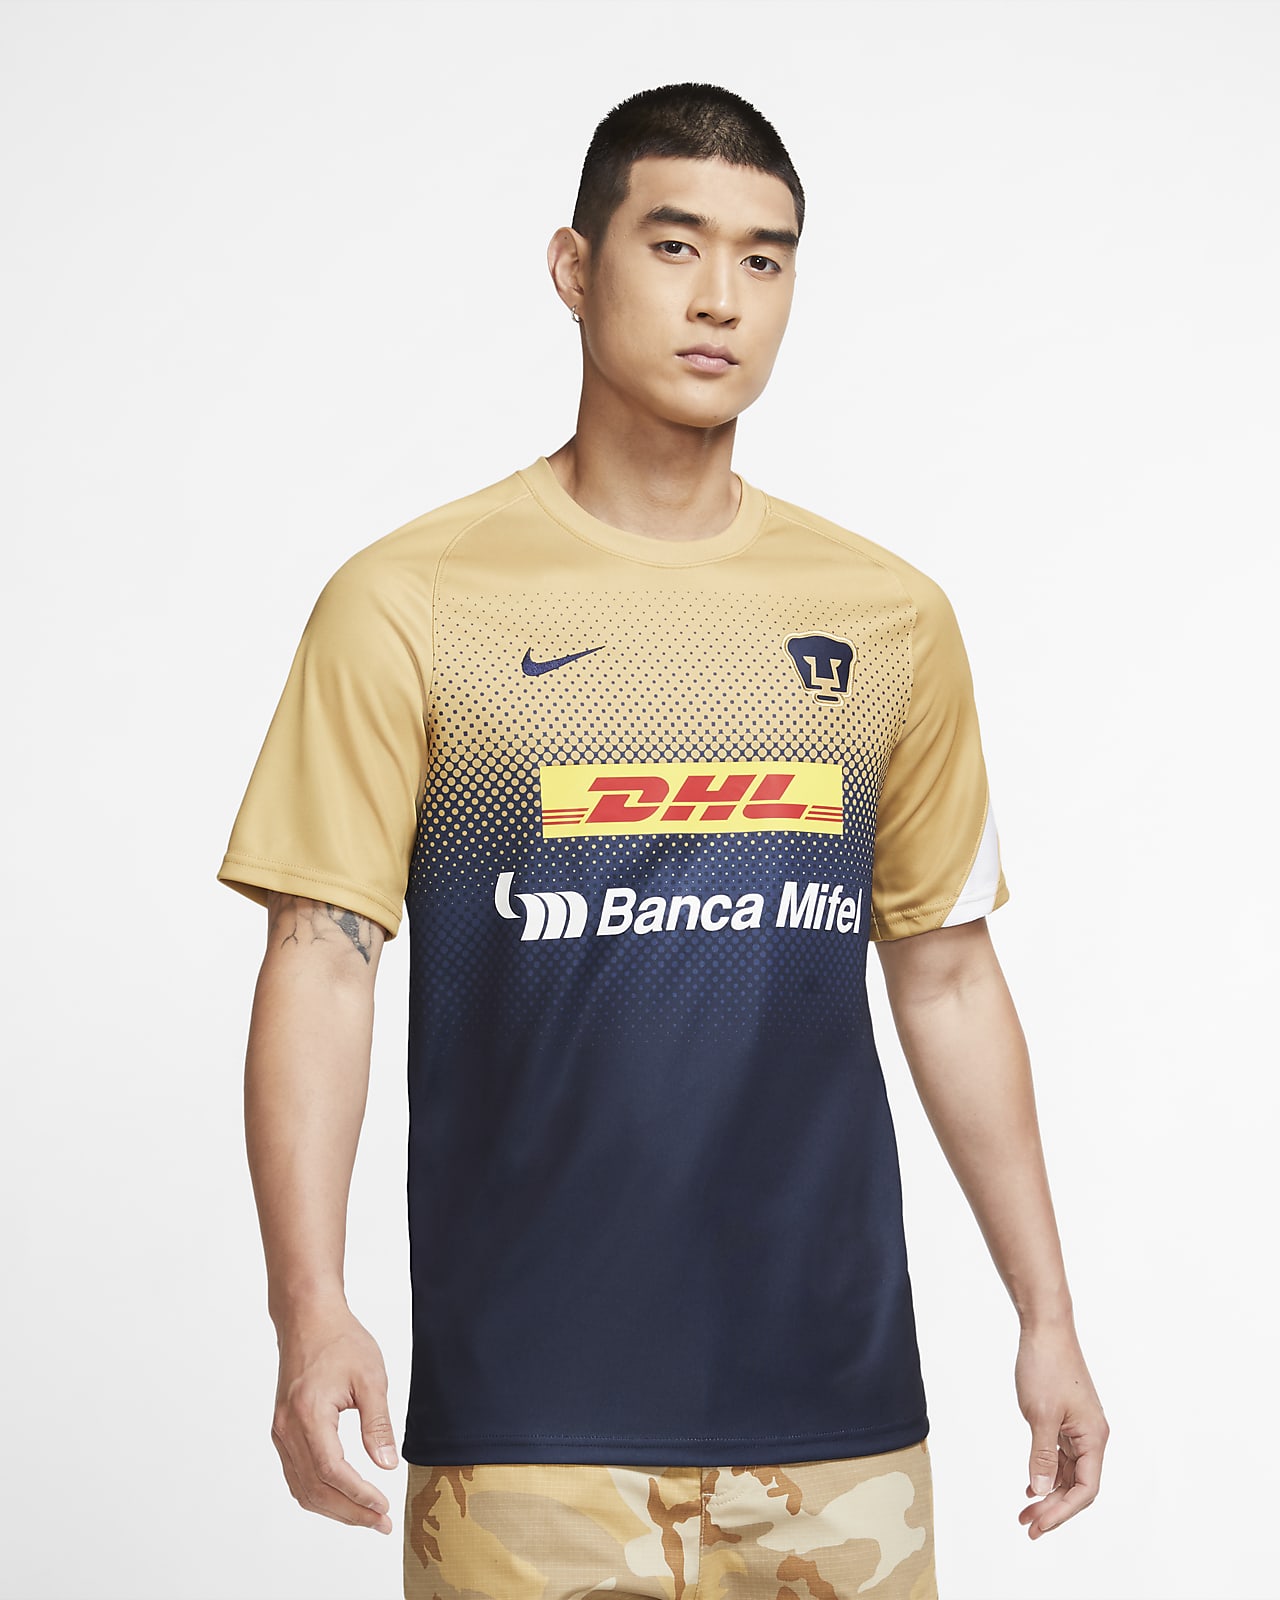 Camiseta de manga corta de fútbol para hombre de Pumas. Nike.com